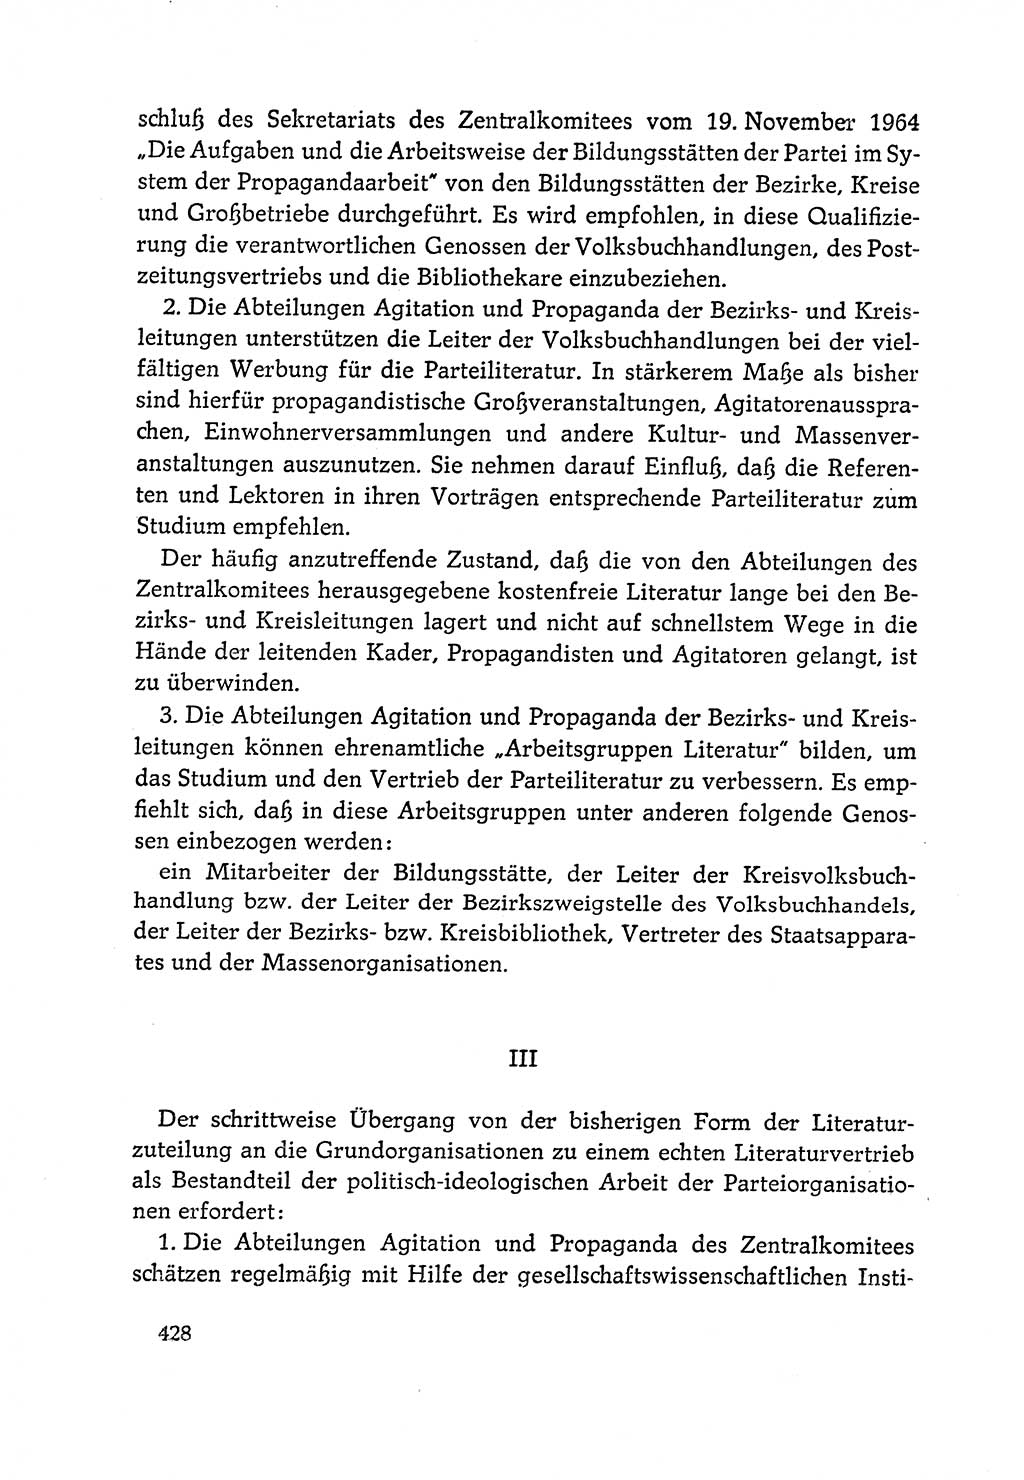 Dokumente der Sozialistischen Einheitspartei Deutschlands (SED) [Deutsche Demokratische Republik (DDR)] 1964-1965, Seite 428 (Dok. SED DDR 1964-1965, S. 428)